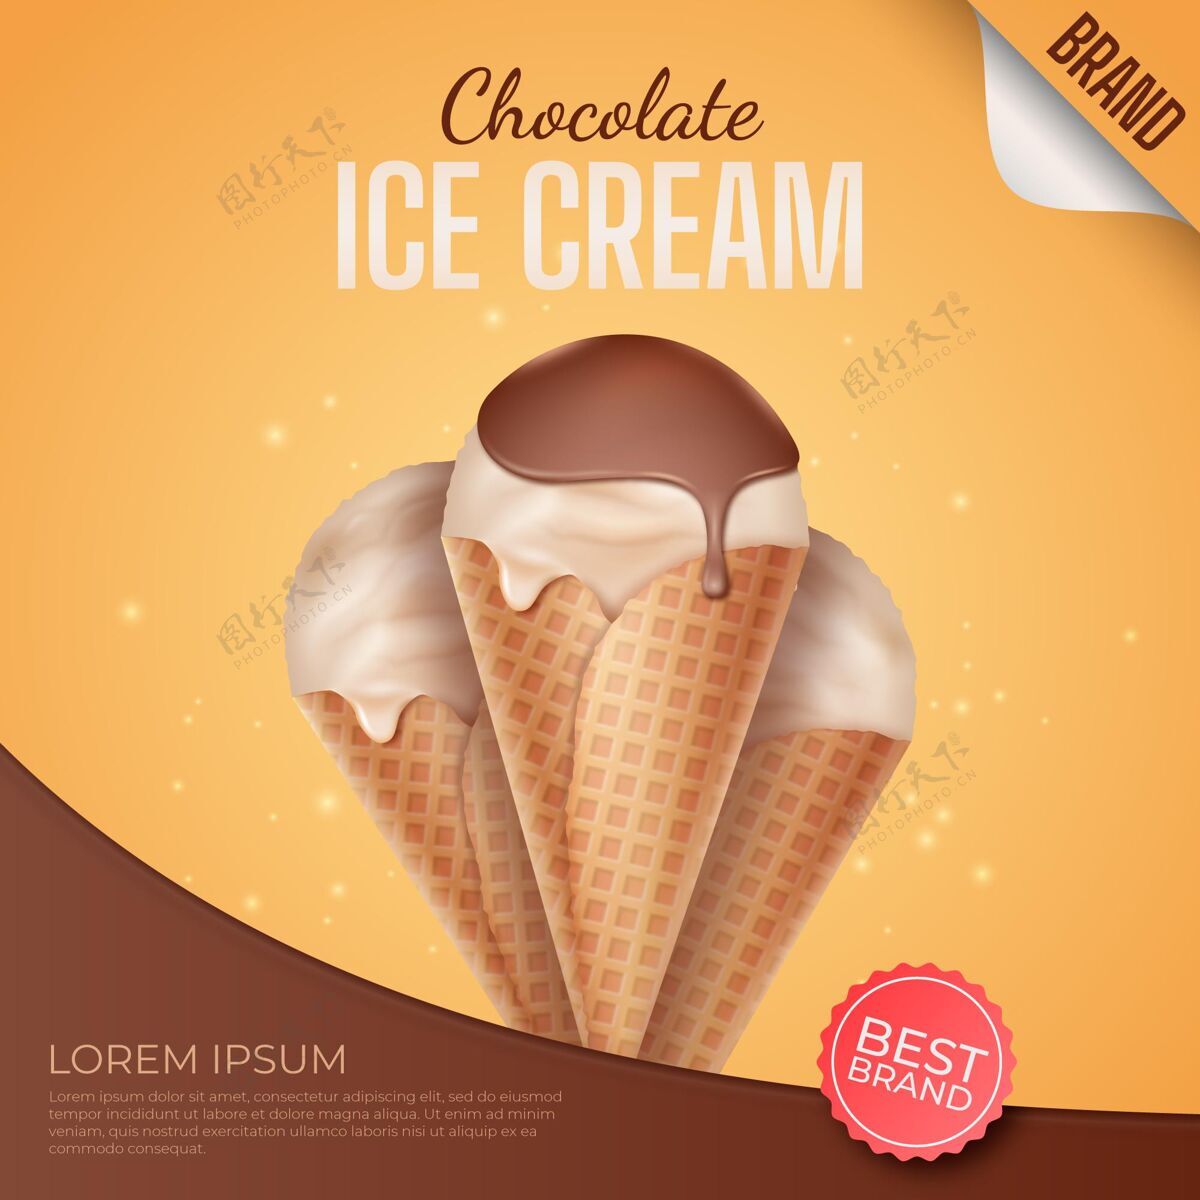 广告现实的巧克力冰淇淋广告商业食物美味